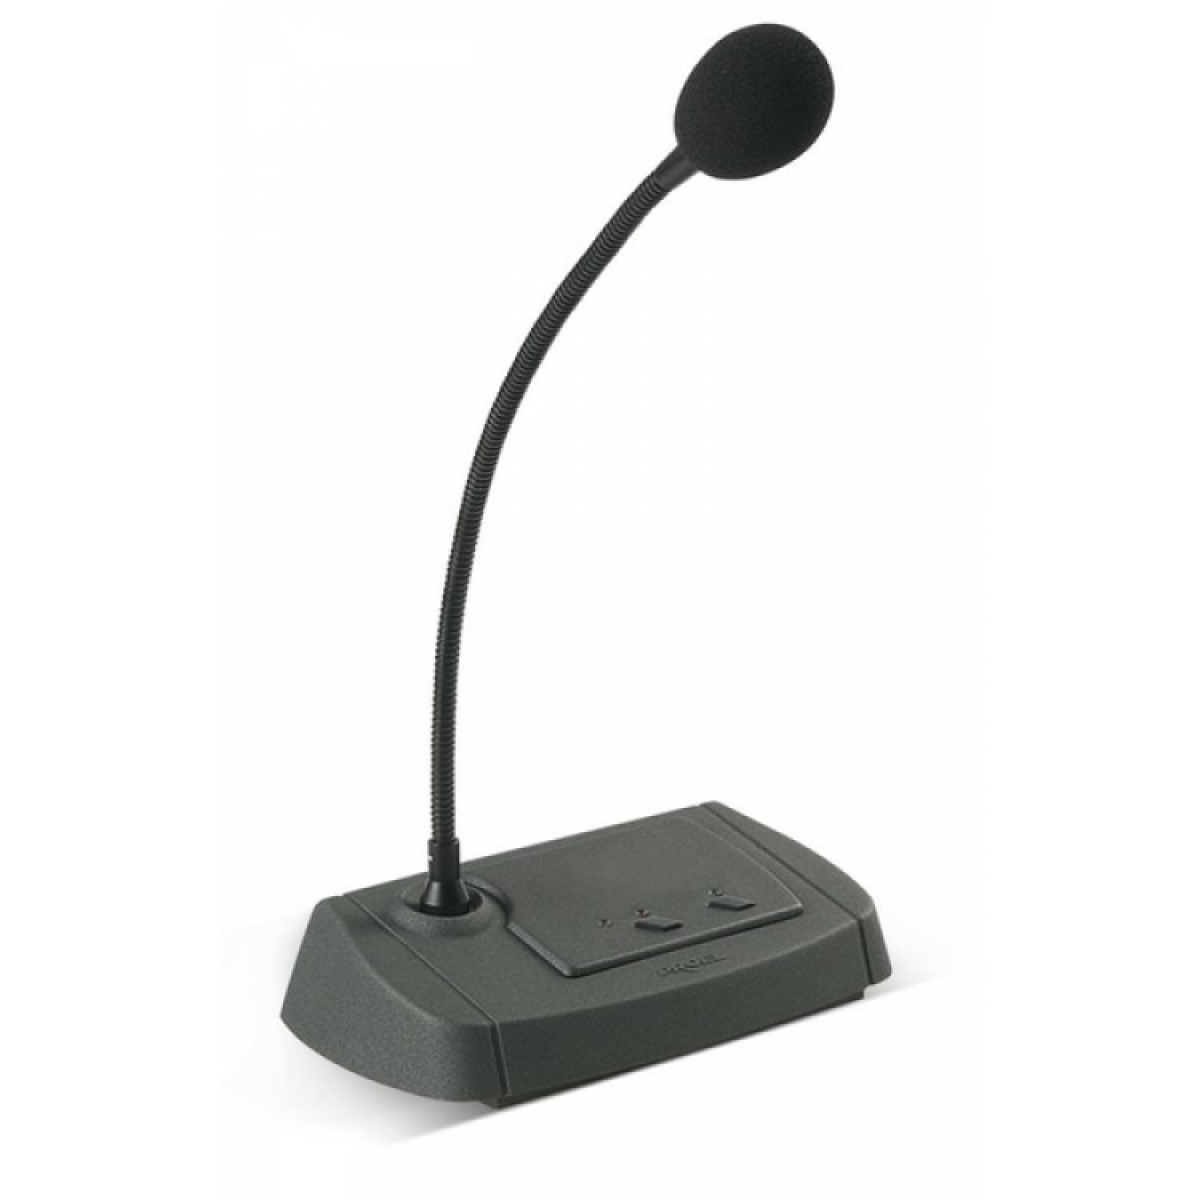 Микрофон для оповещения. Микрофонная консоль Proel bm04. RM-8064: микрофонная консоль. Микрофон Proel bm08, черный. Proel wm600m 863-865.